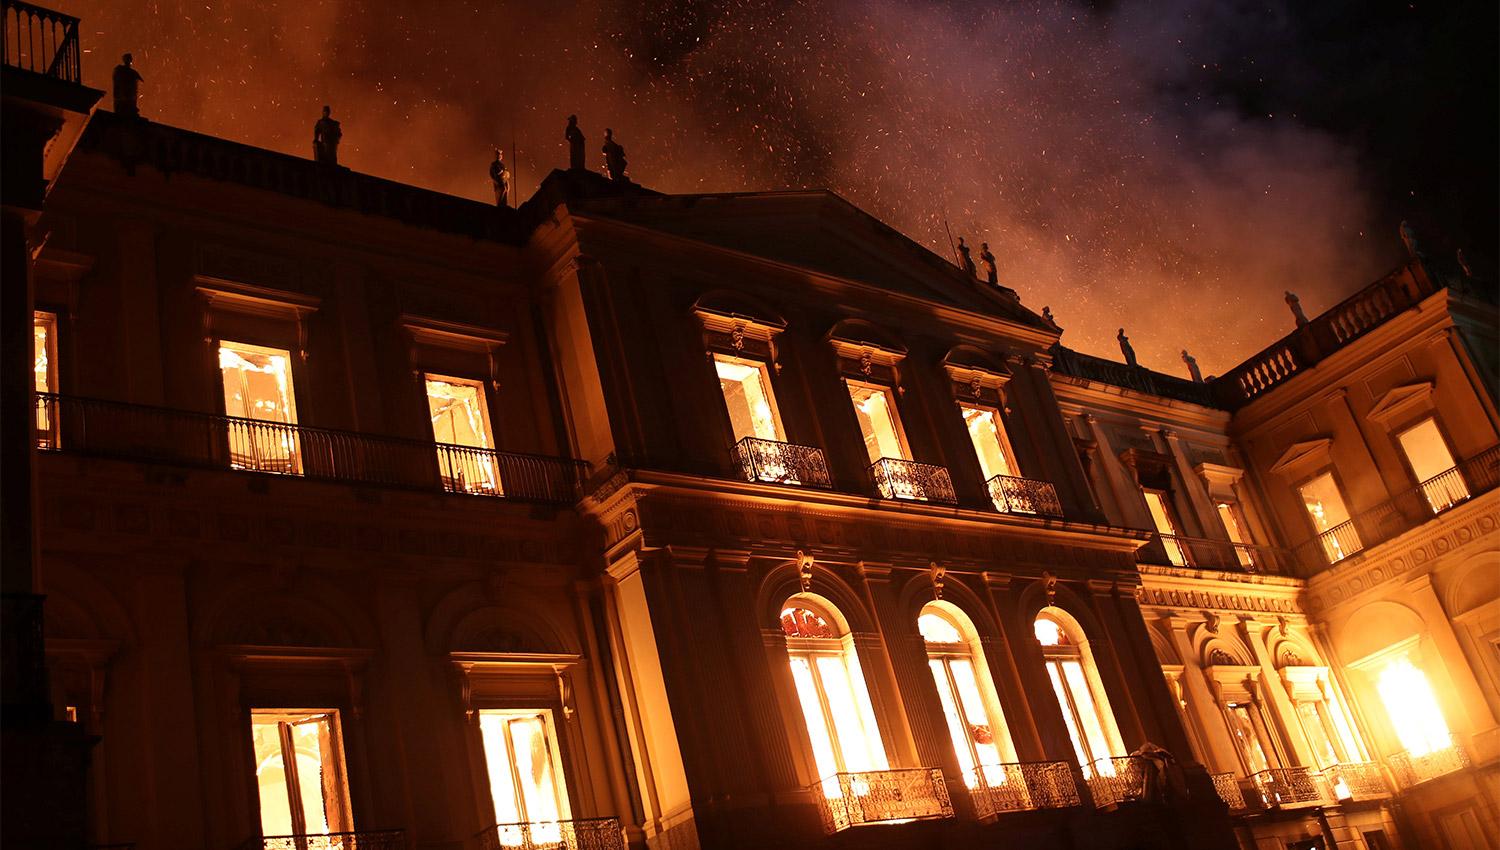 Un enorme incendio en Río de Janeiro consume el Museo Nacional de Brasil